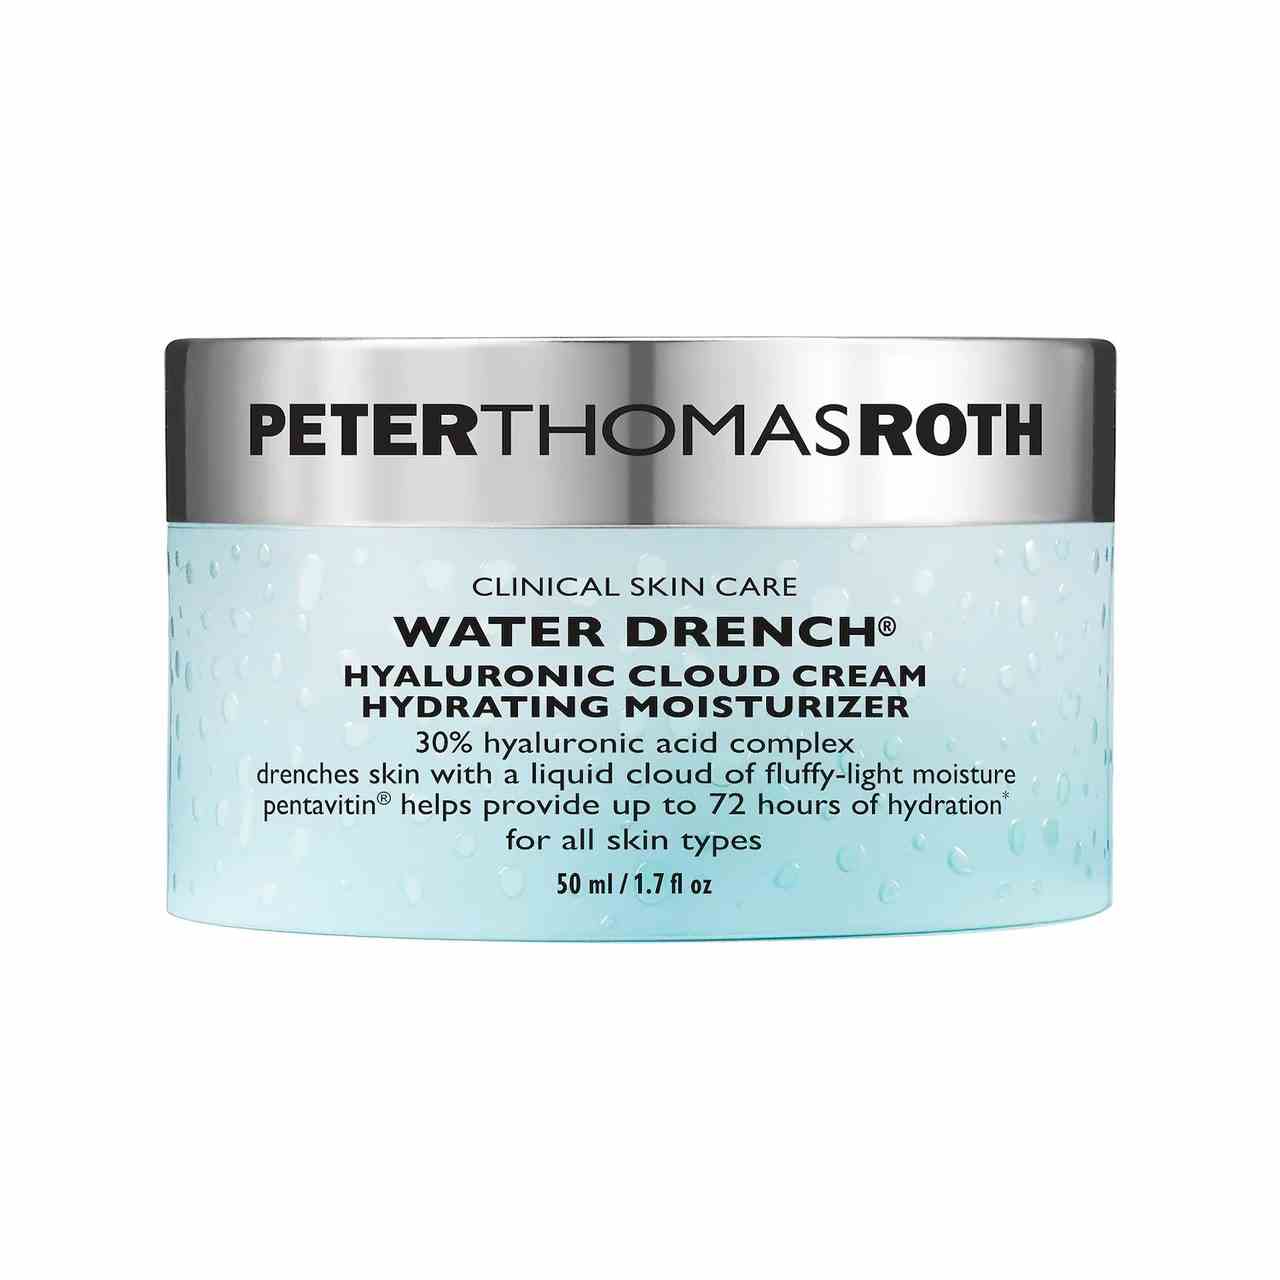 Peter Thomas Roth Water Drench Hyaluronic Cloud Cream hellblaues Glas mit silberner Kappe auf weißem Hintergrund